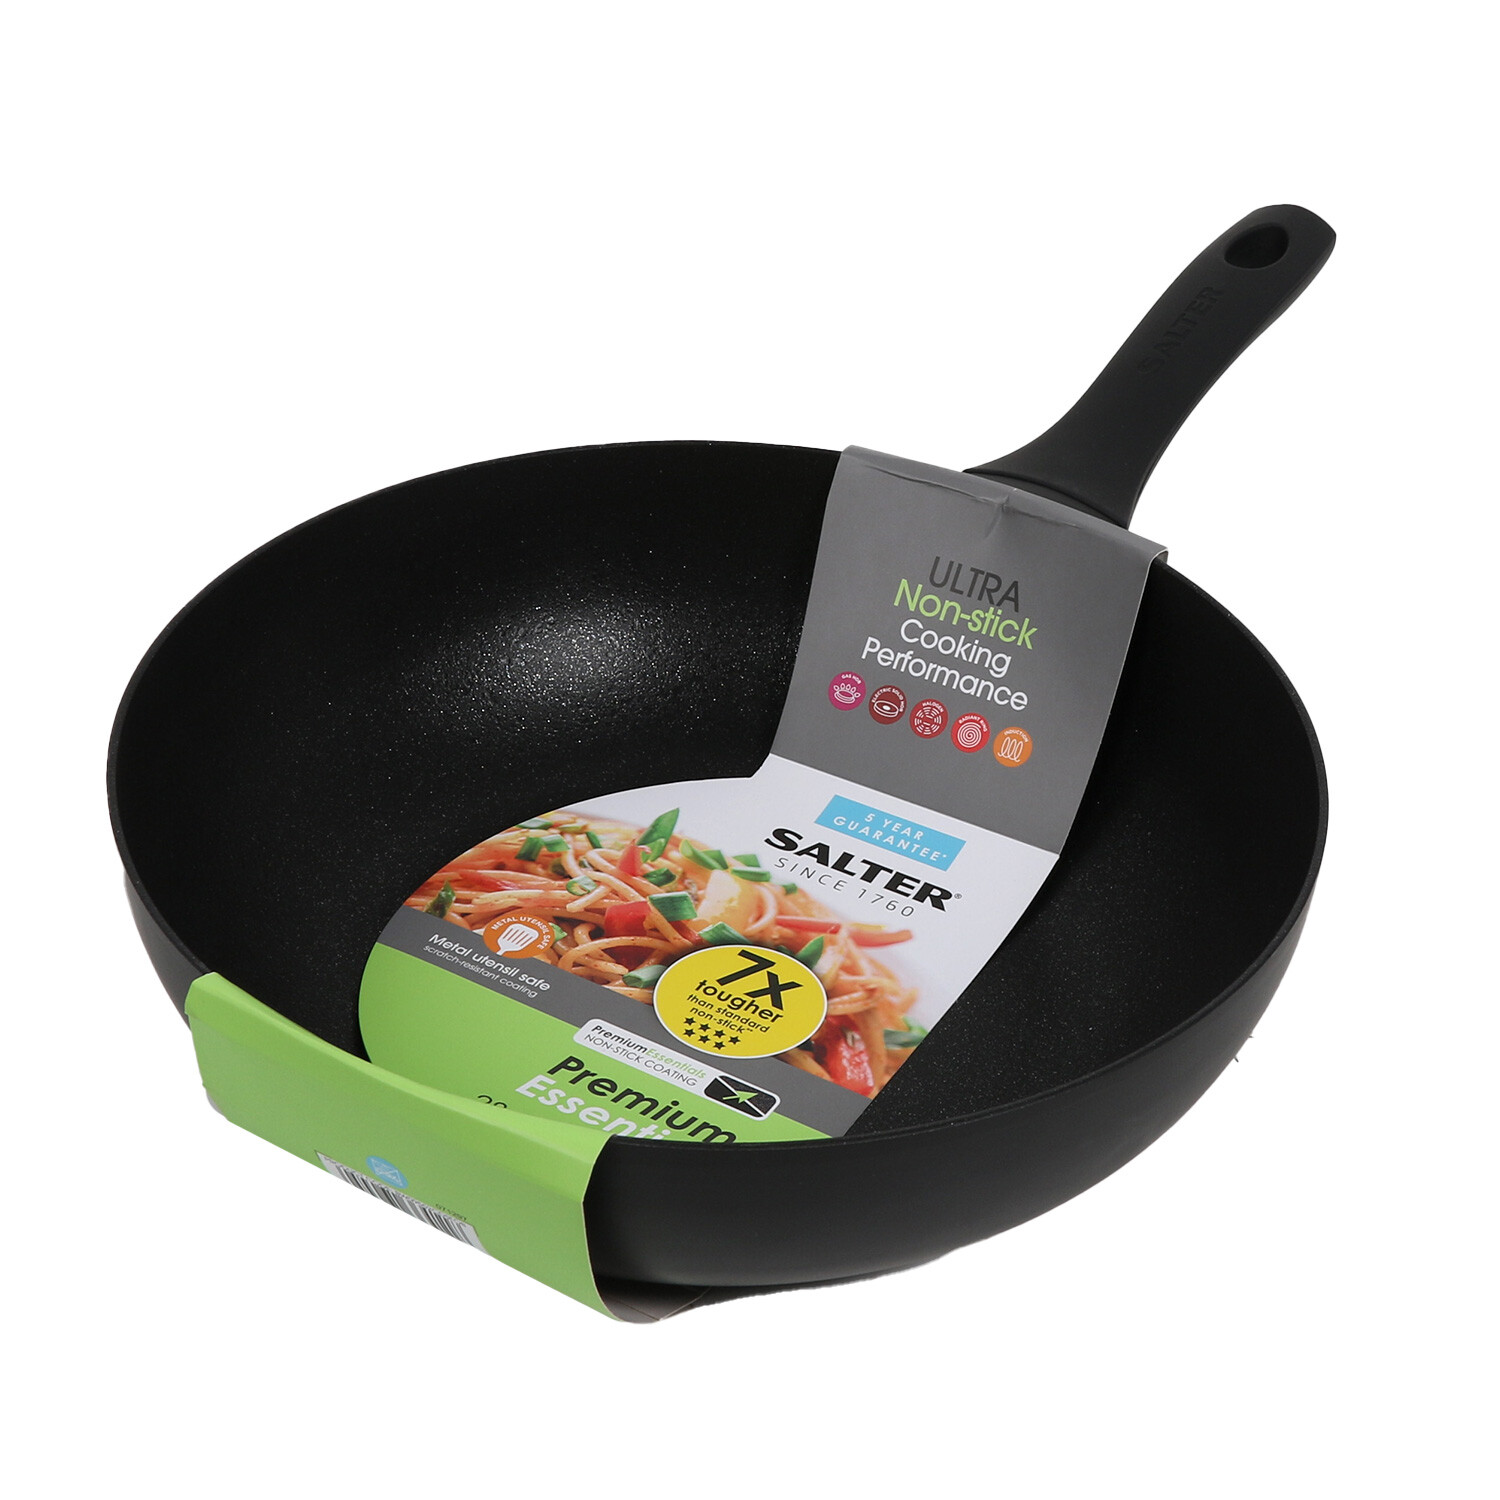 Salter Premium Stir Fry Pan - Black Image 1